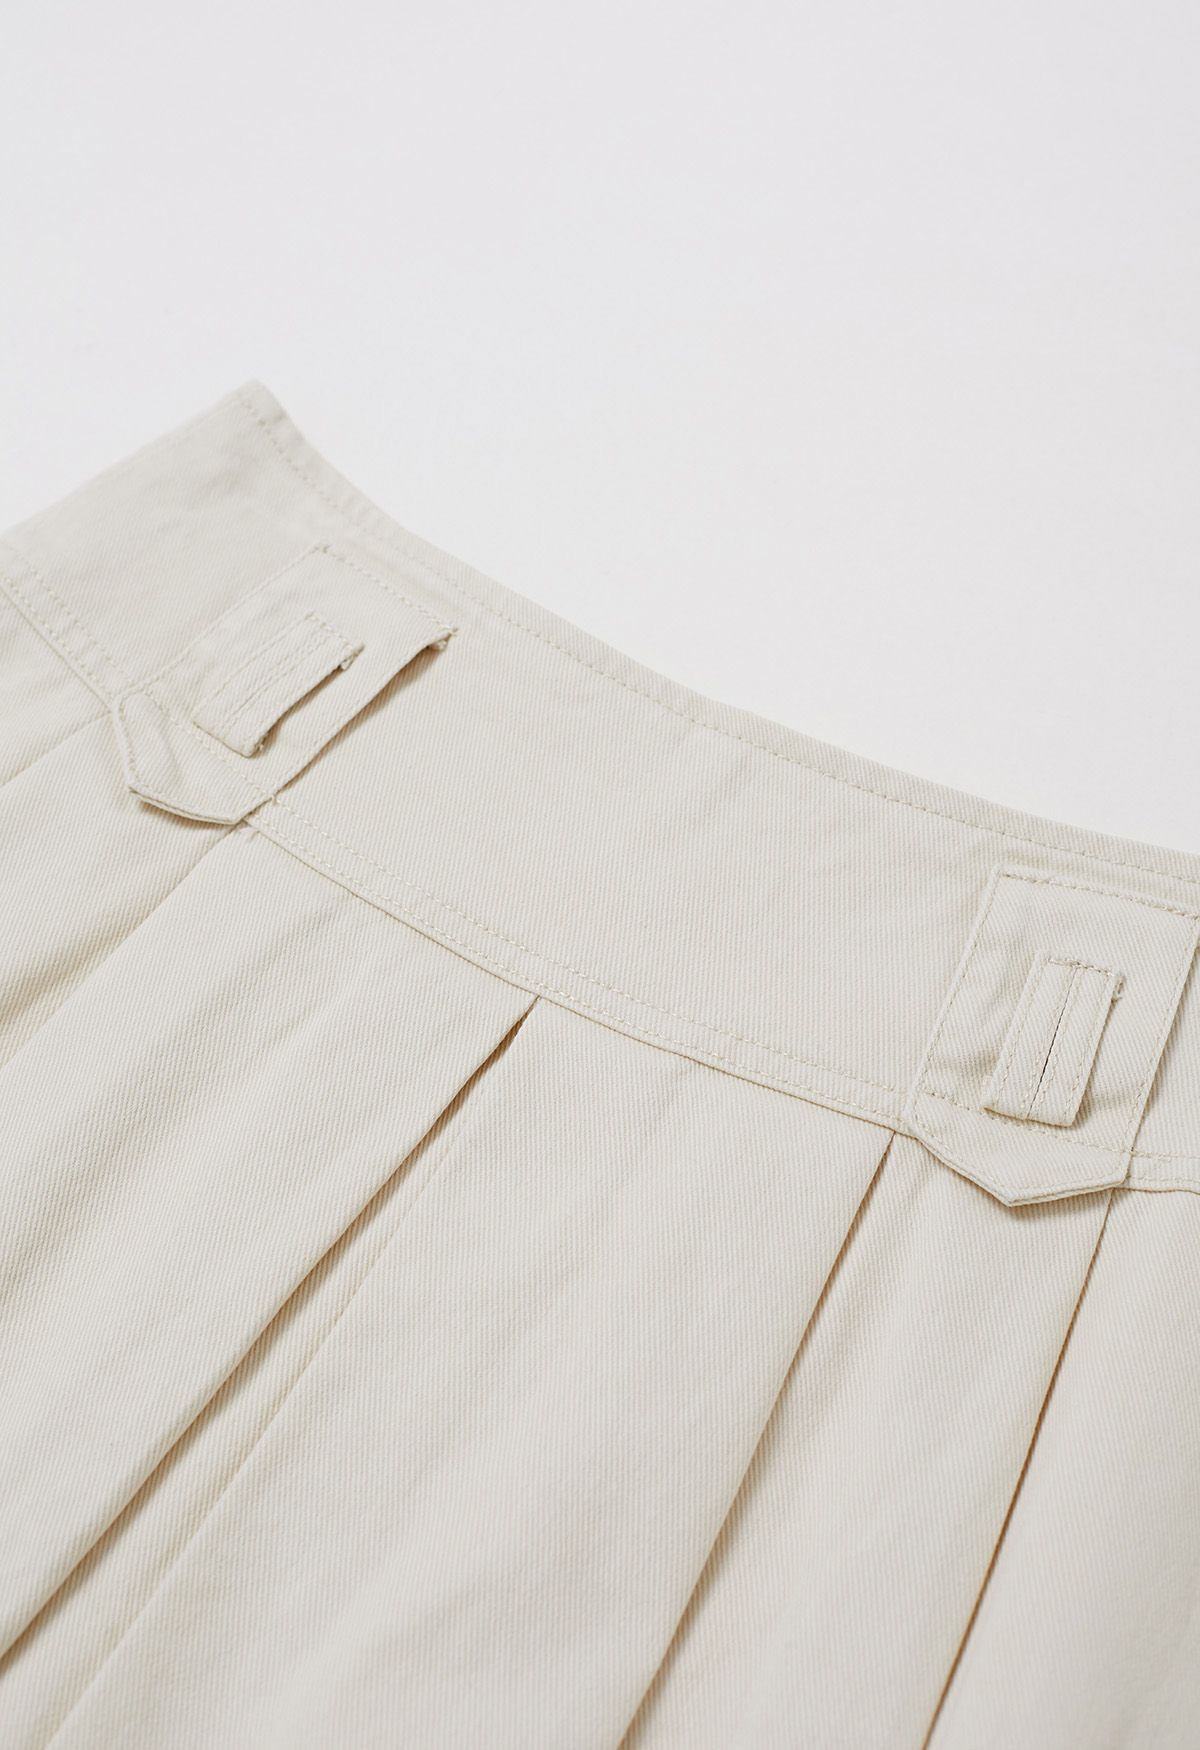 تنورة قصيرة من الدنيم ذات طيات كلاسيكية مع حزام باللون العاجي